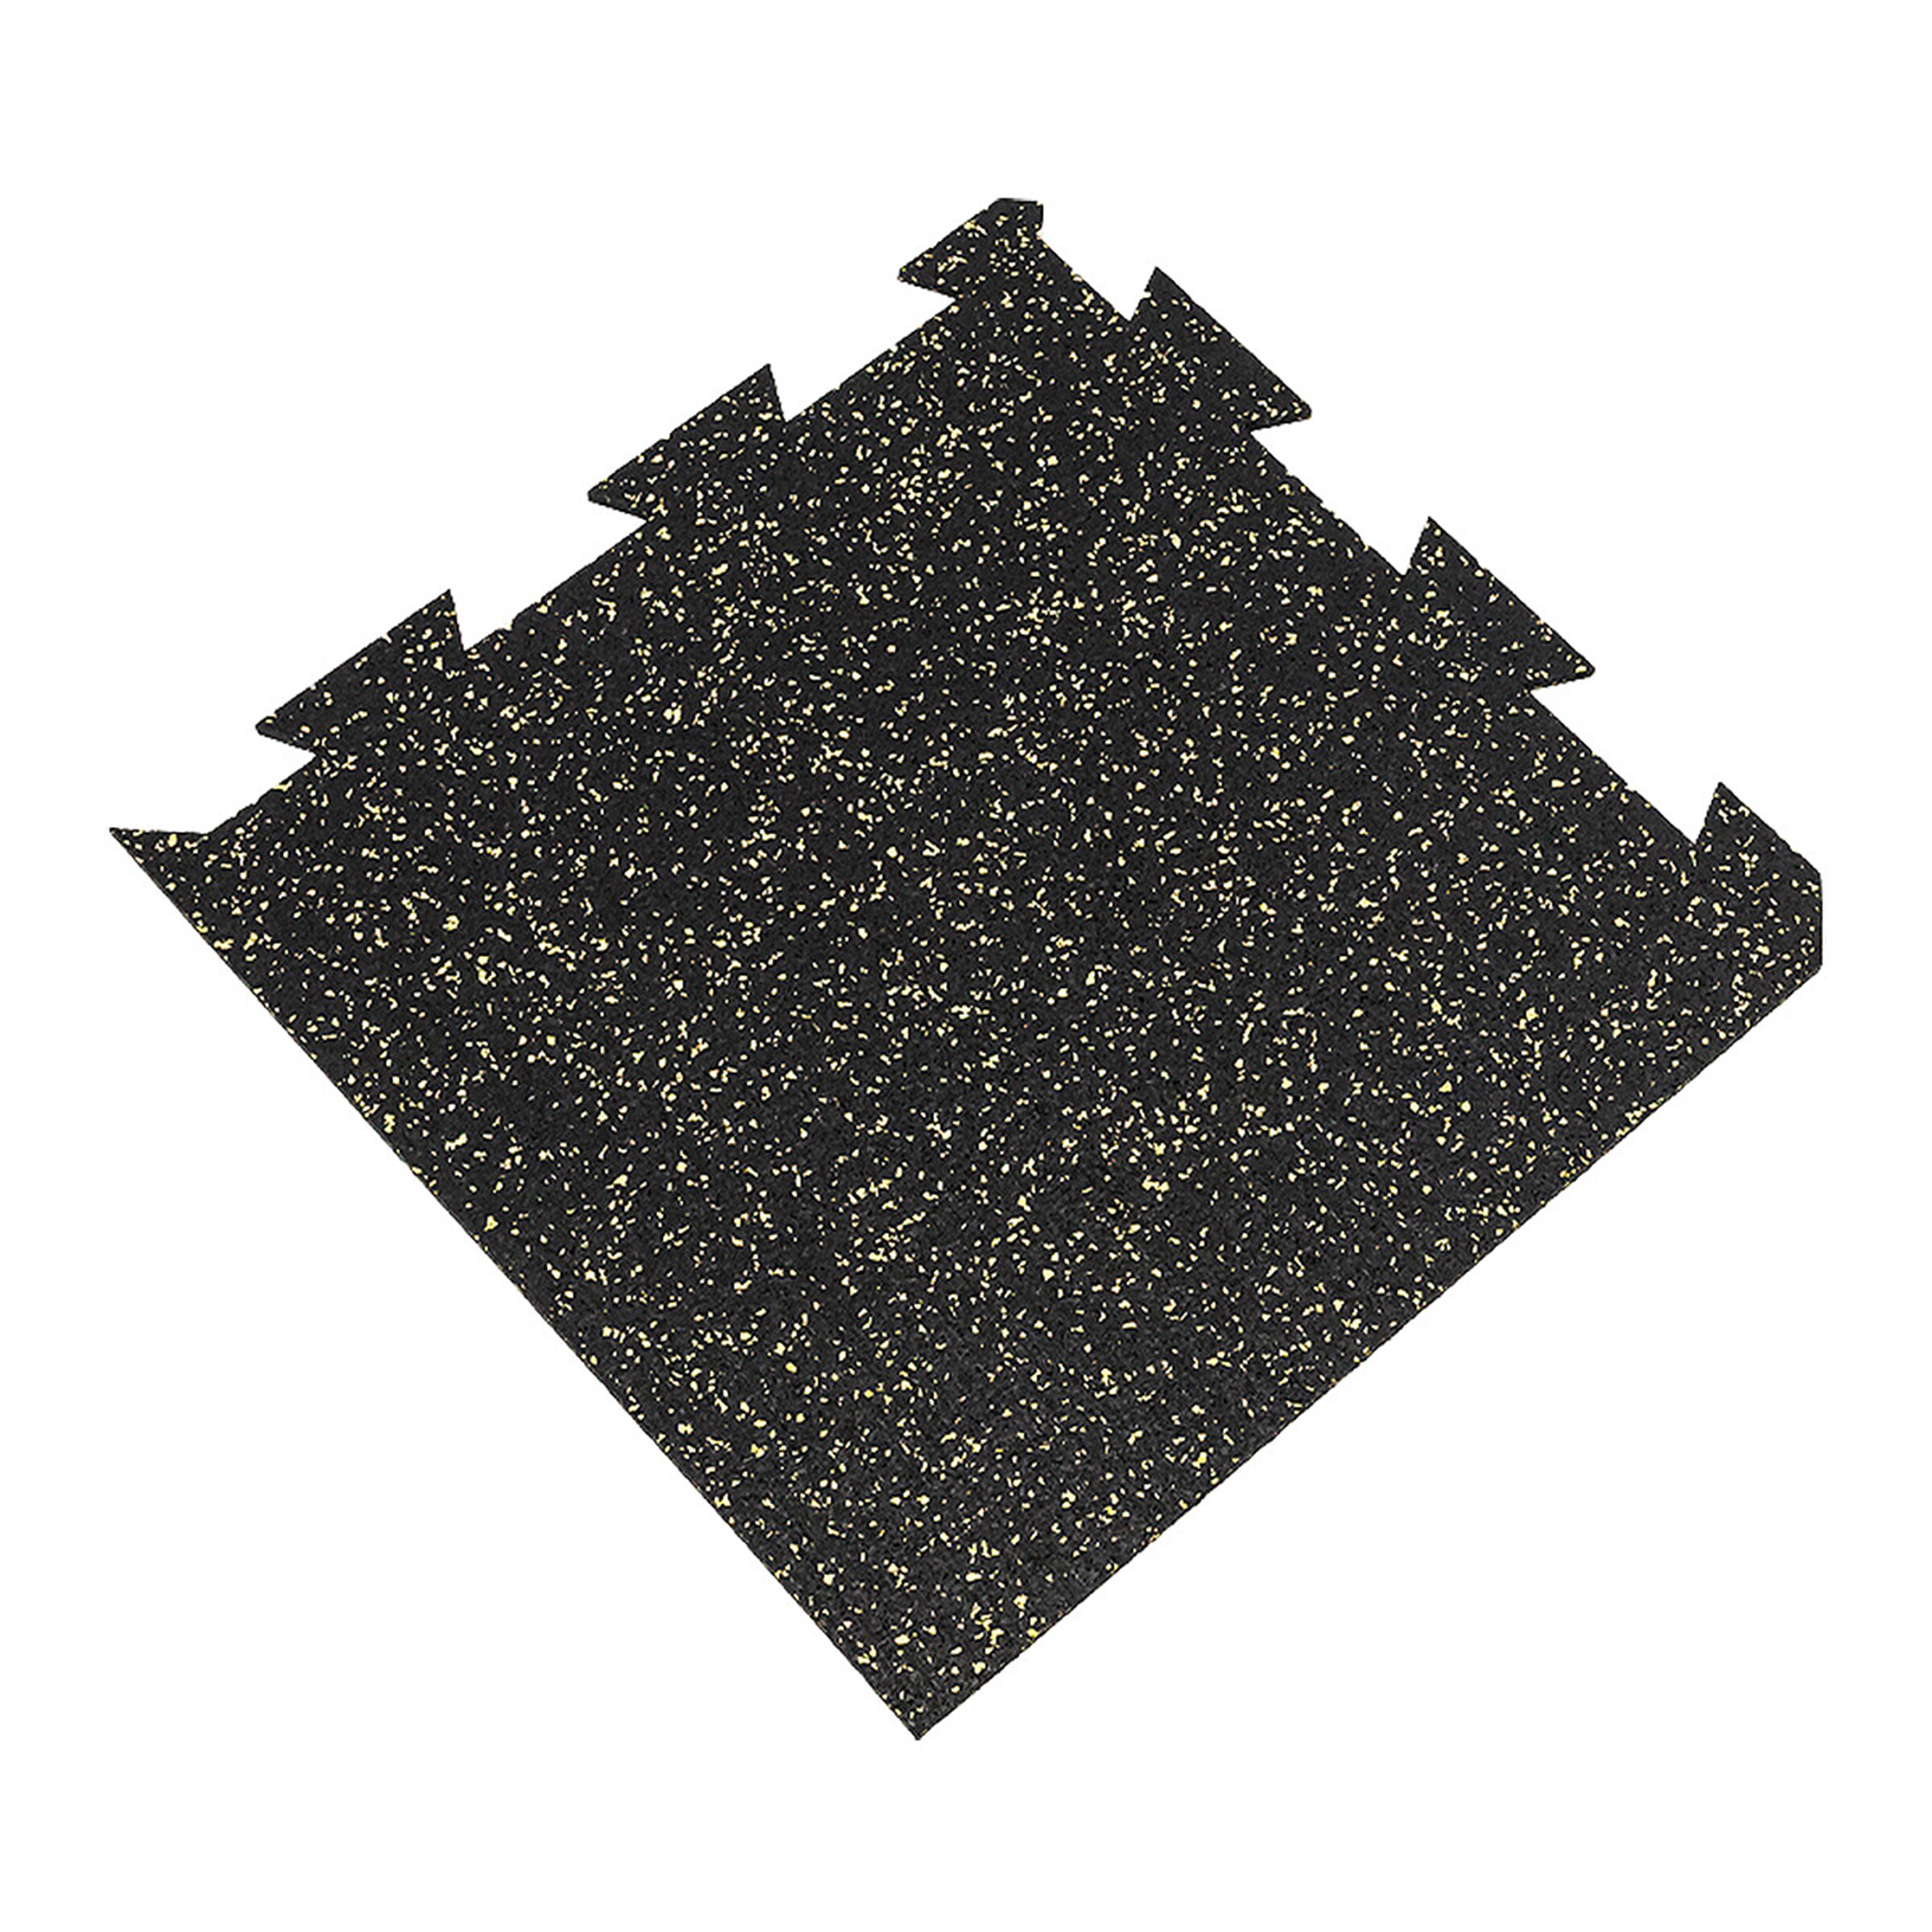 Čierno-žltá gumová modulová puzzle dlažba (roh) FLOMA FitFlo SF1050 - dĺžka 50 cm, šírka 50 cm a výška 0,8 cm